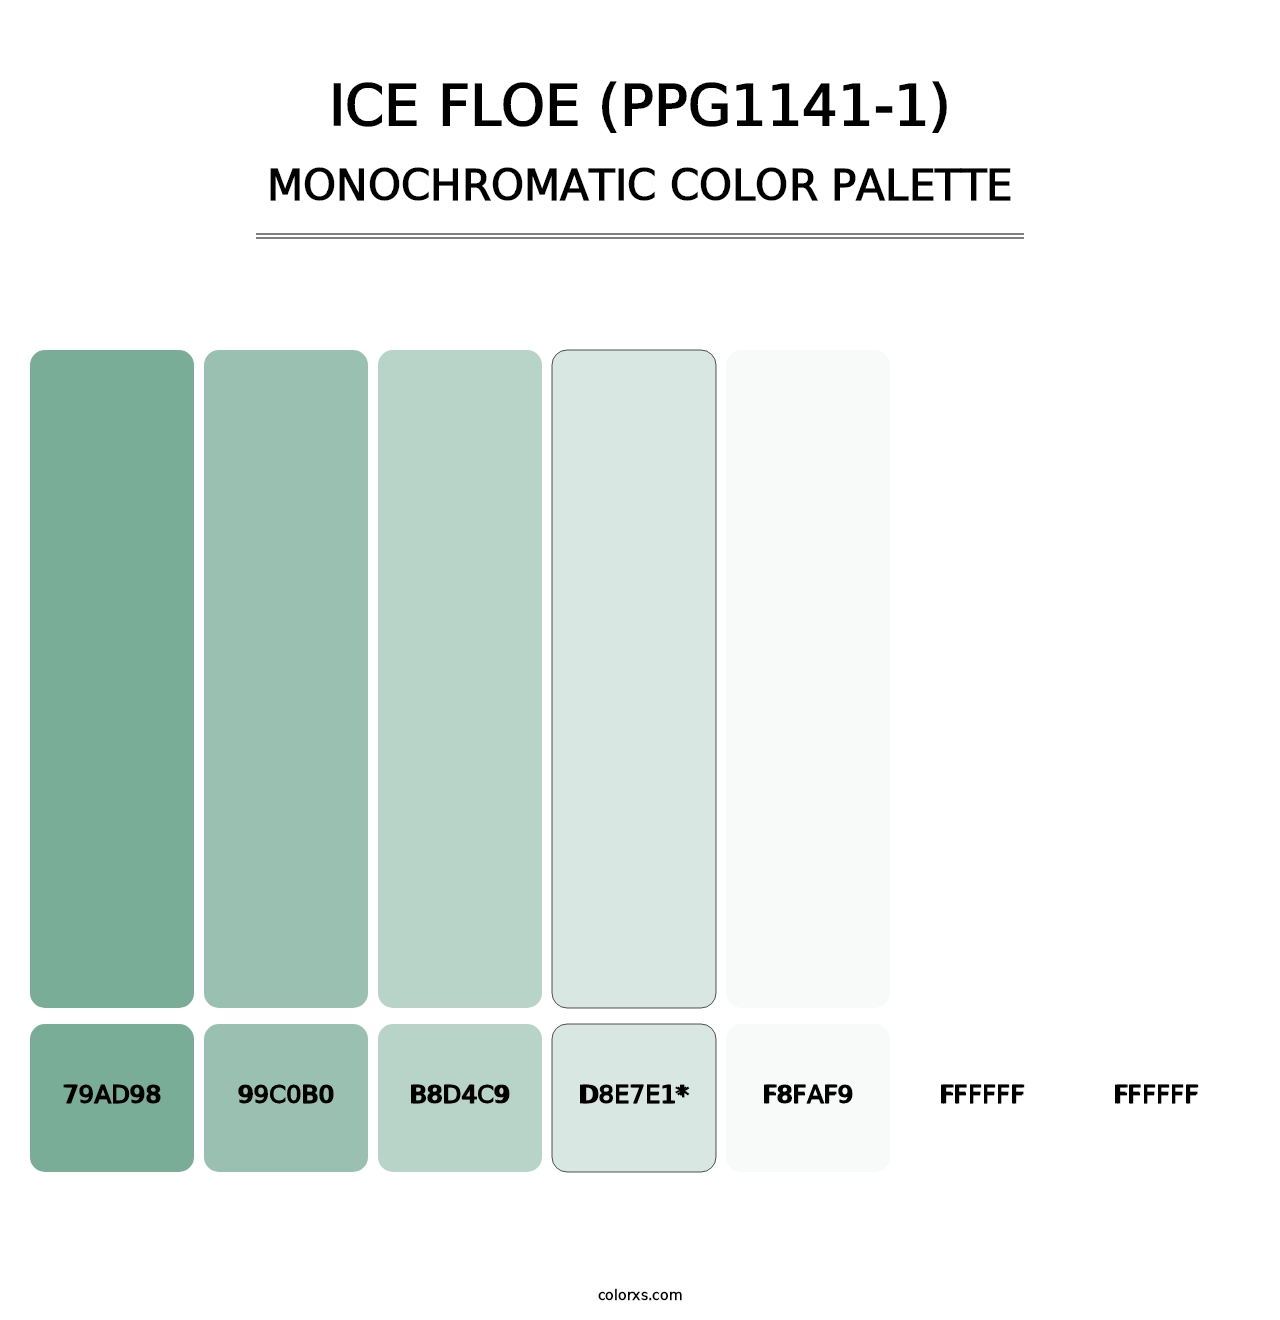 Ice Floe (PPG1141-1) - Monochromatic Color Palette